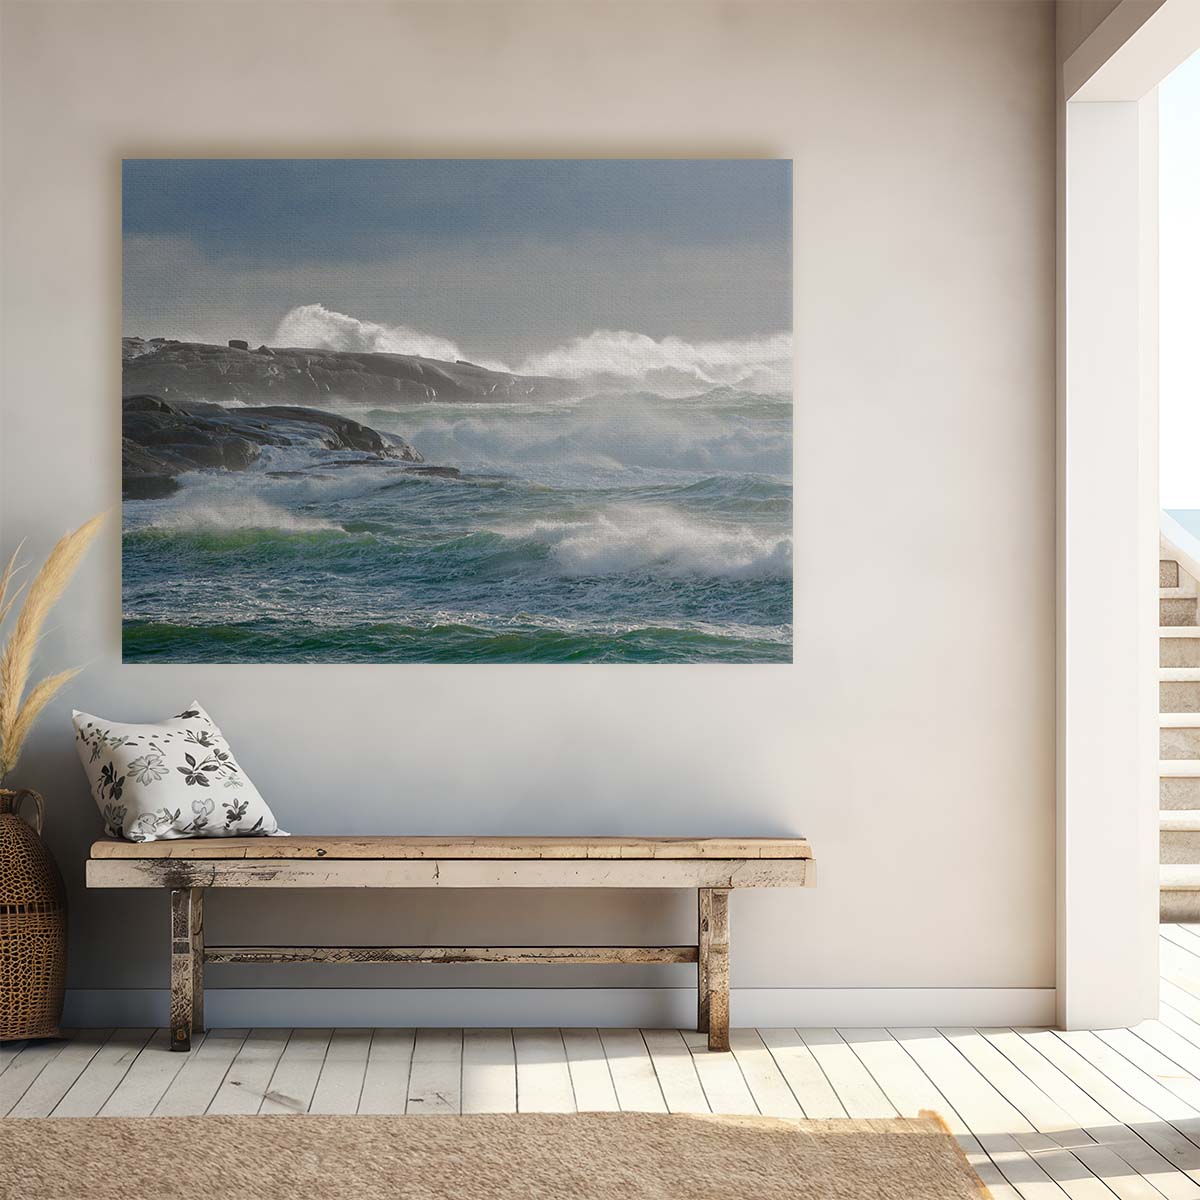 Nova Scotia Lighthouse Amidst Waves - Coastal Seascape Photography Wall Art